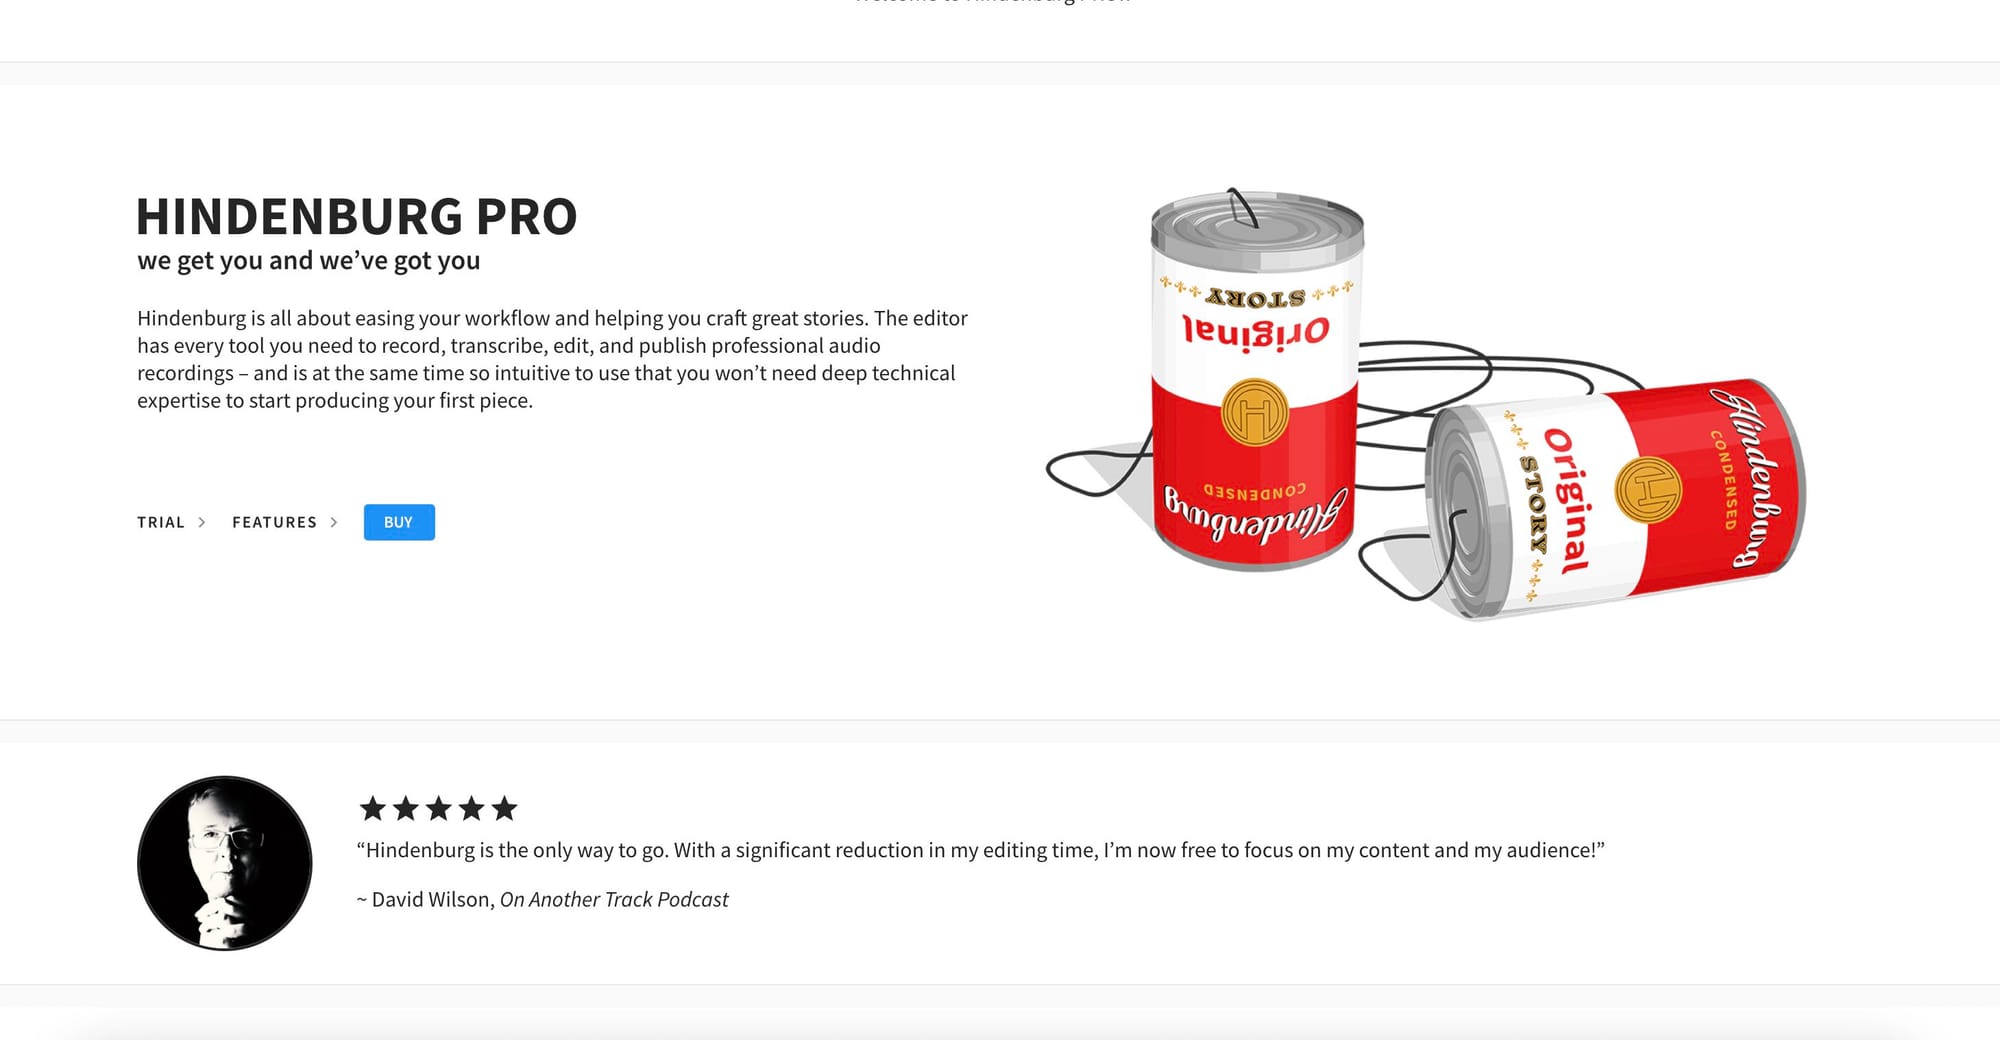 Hindenburg Pro's homepage